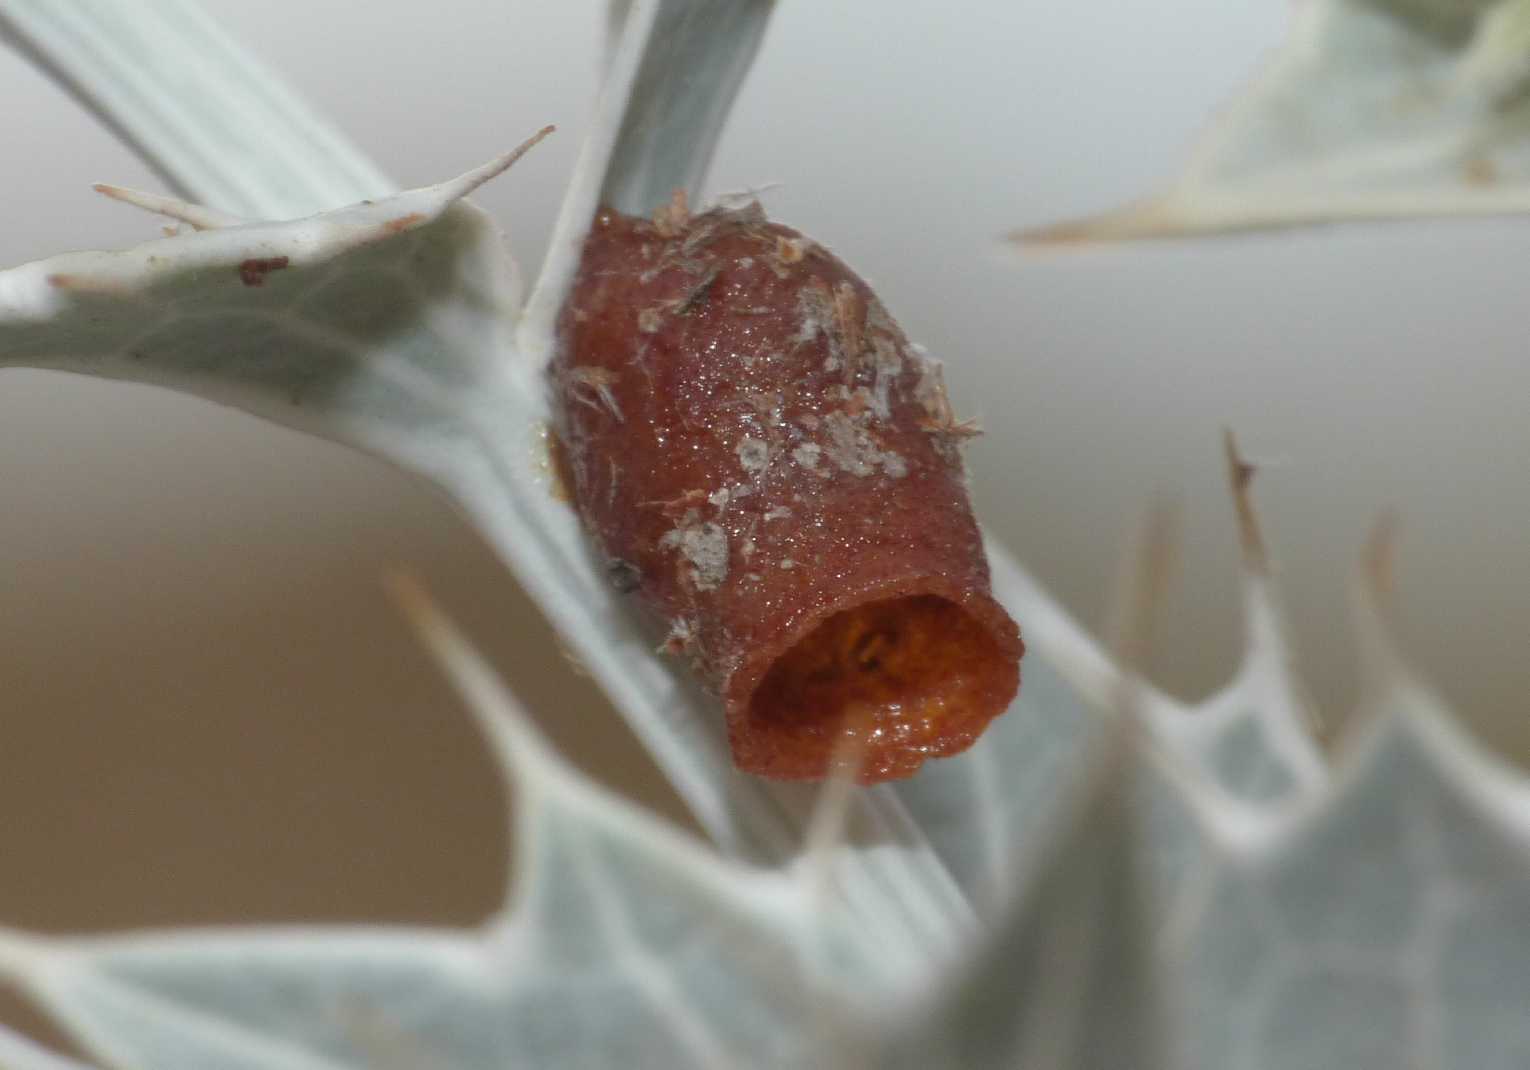 Anthidiellum strigatum ♂ (Apidae Megachilinae)